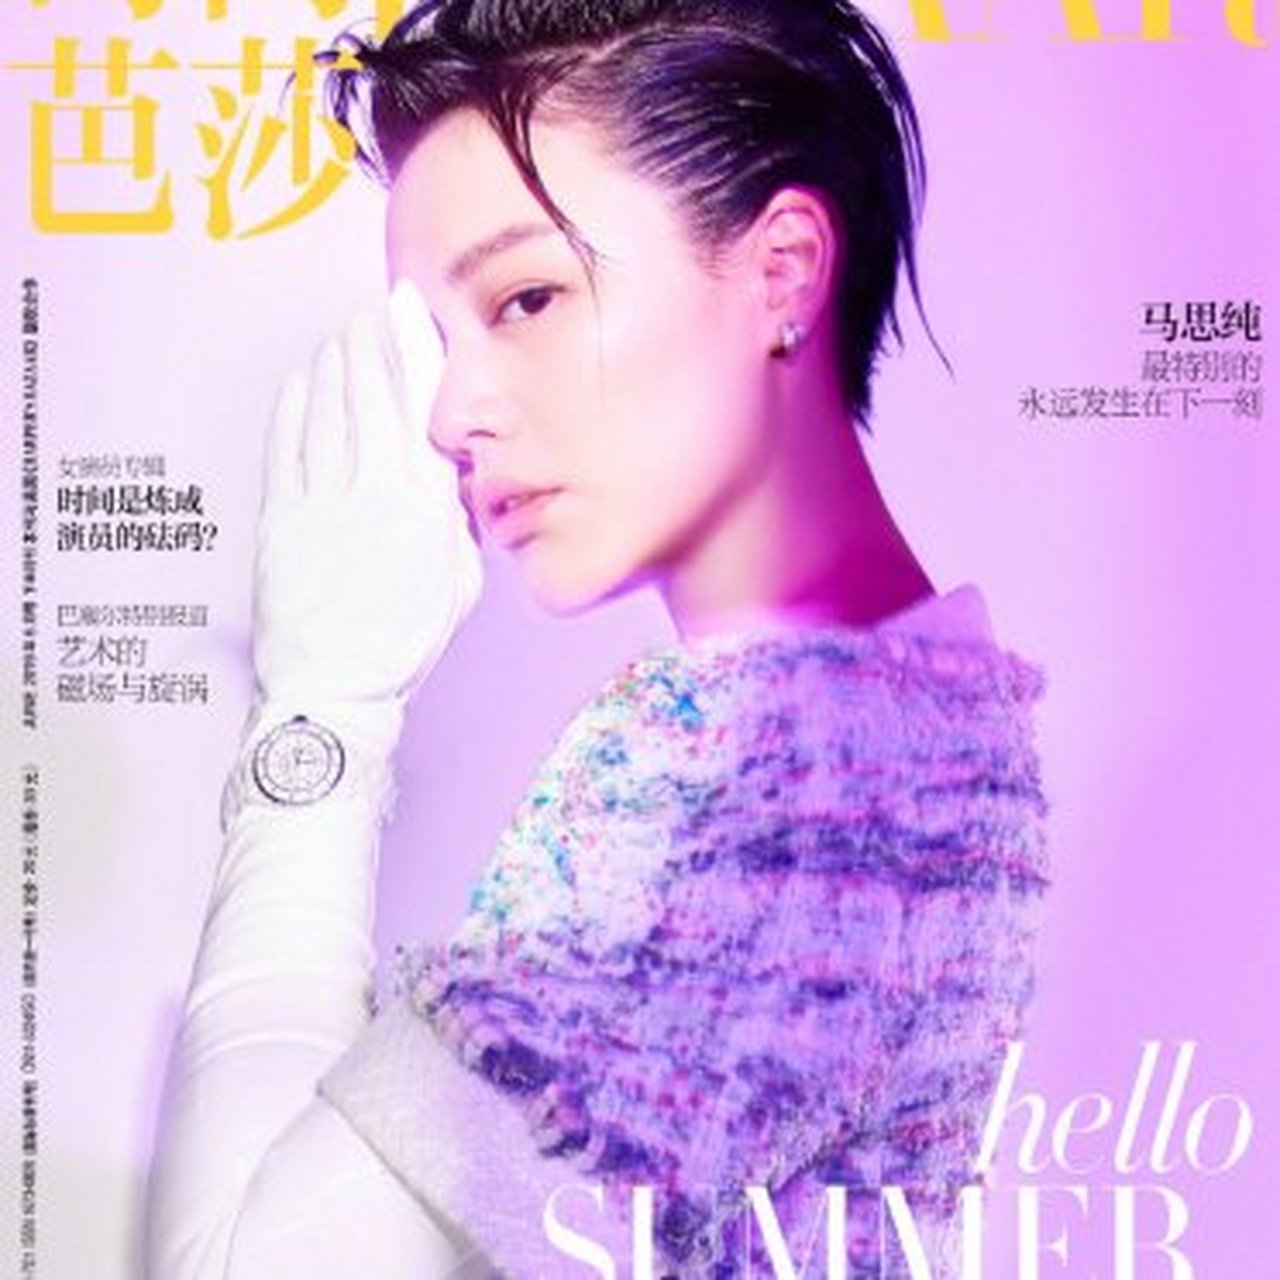 马思纯登时尚杂志封面,利落的短发攻气十足,在紫色背景下拍摄,多了几